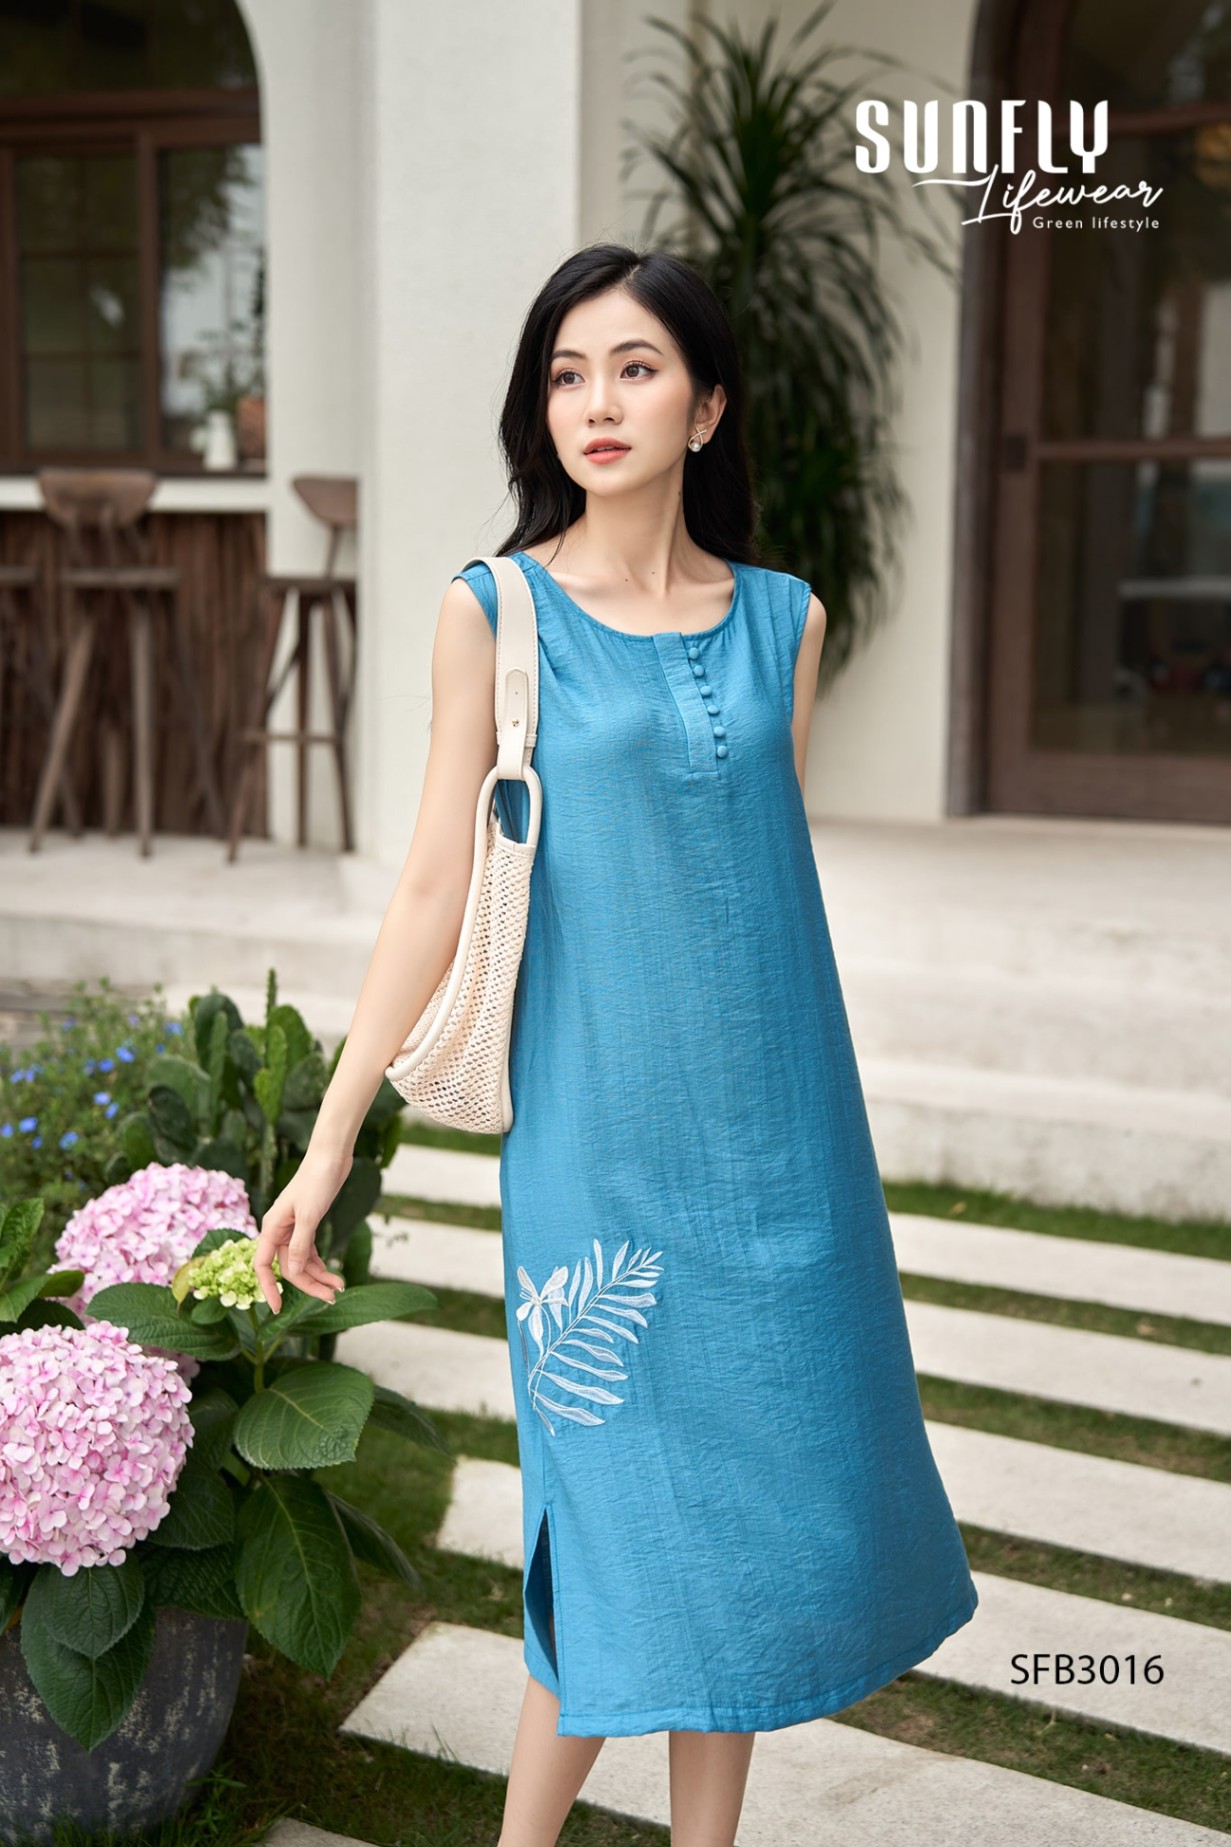 Đầm xòe công sở tay lỡ cổ sơ mi KK119-15 | Thời trang công sở K&K Fashion